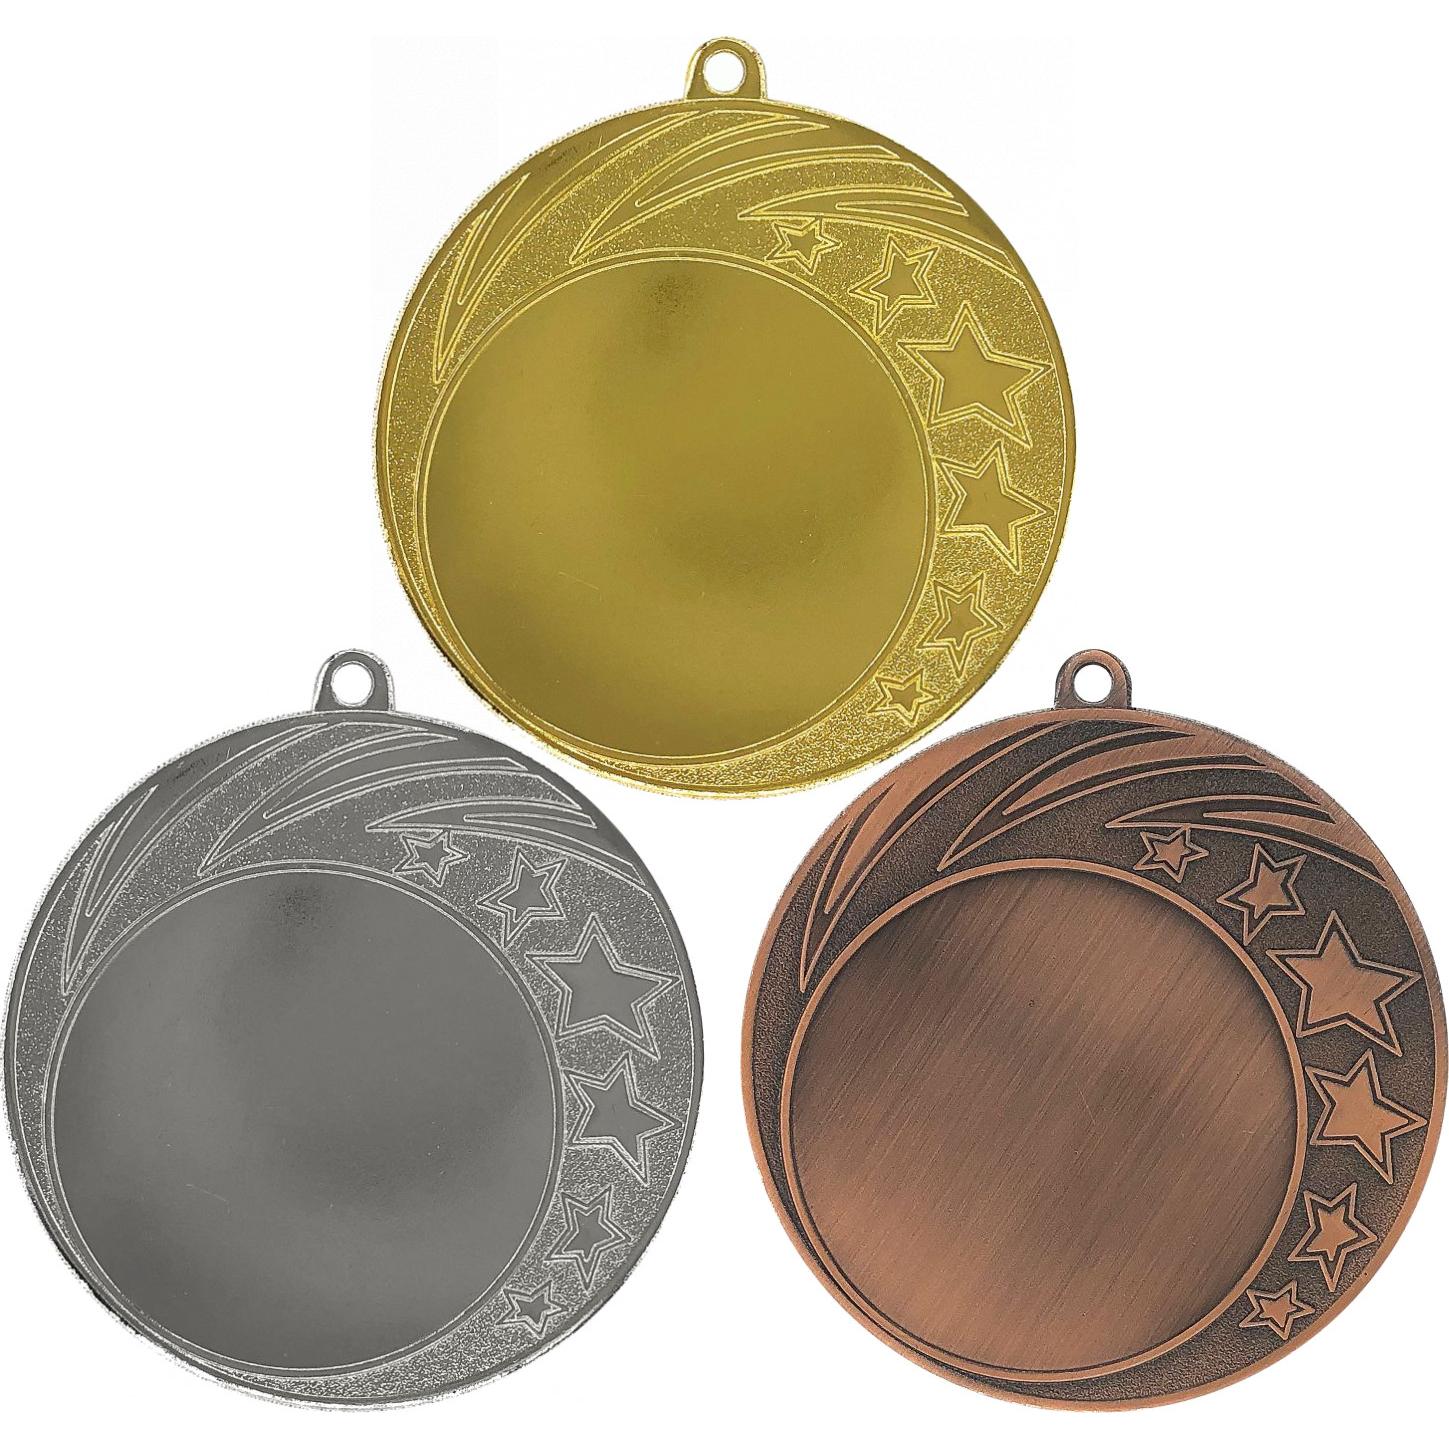 Комплект из трёх медалей №3650 (Диаметр 70 мм, металл. Место для вставок: лицевая диаметр 50 мм, обратная сторона диаметр 65 мм)